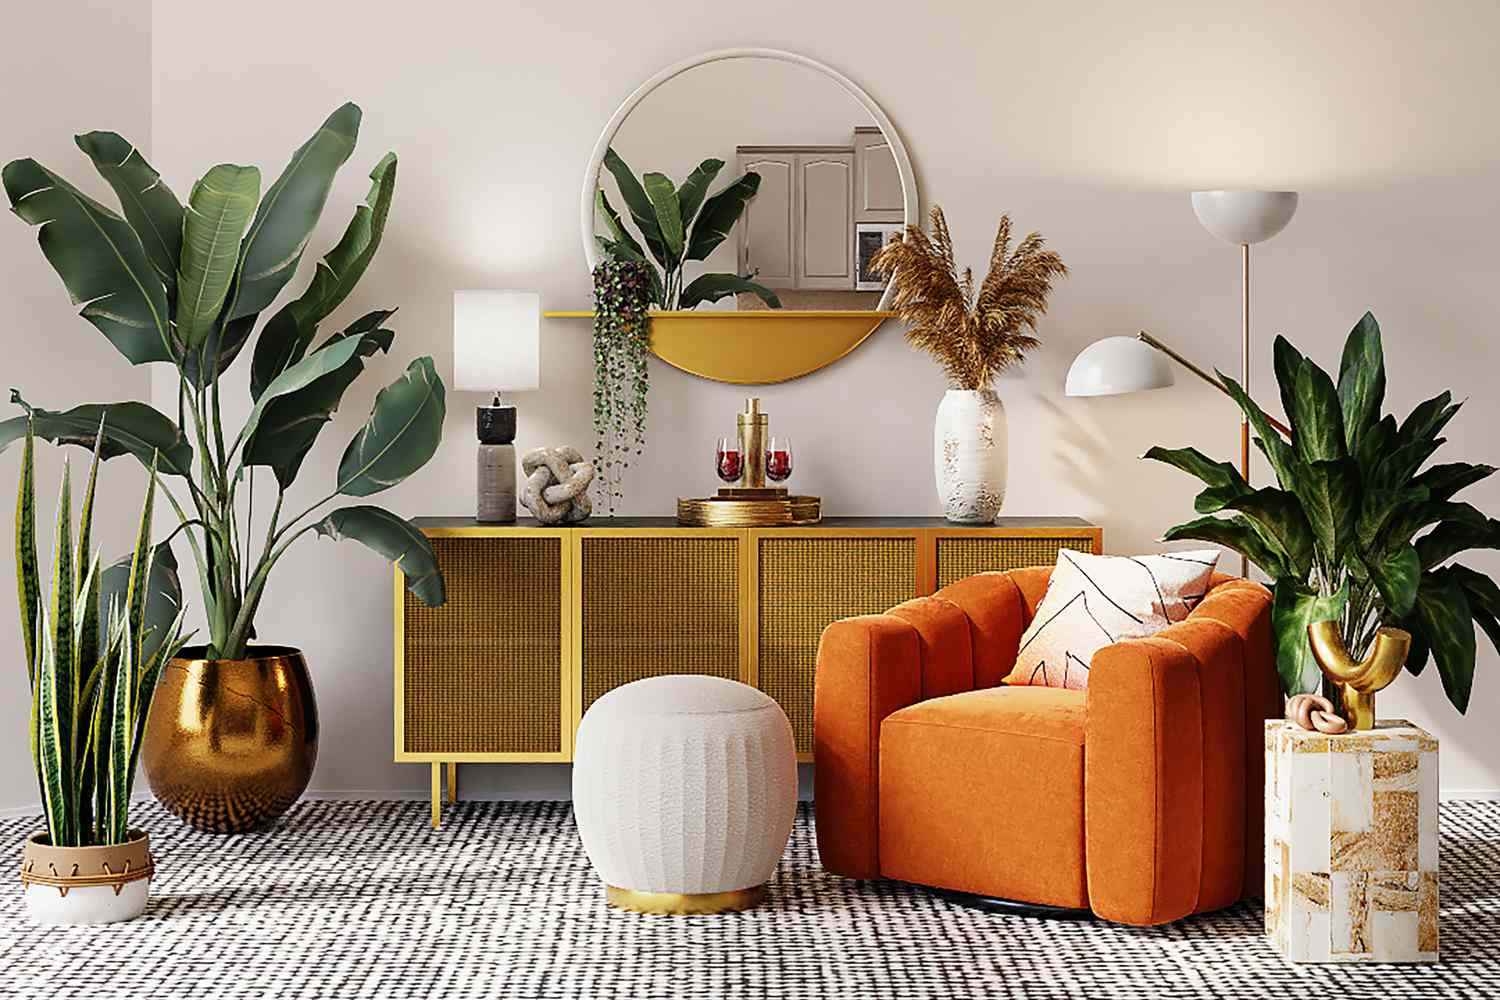 Leo-inspired living room decor